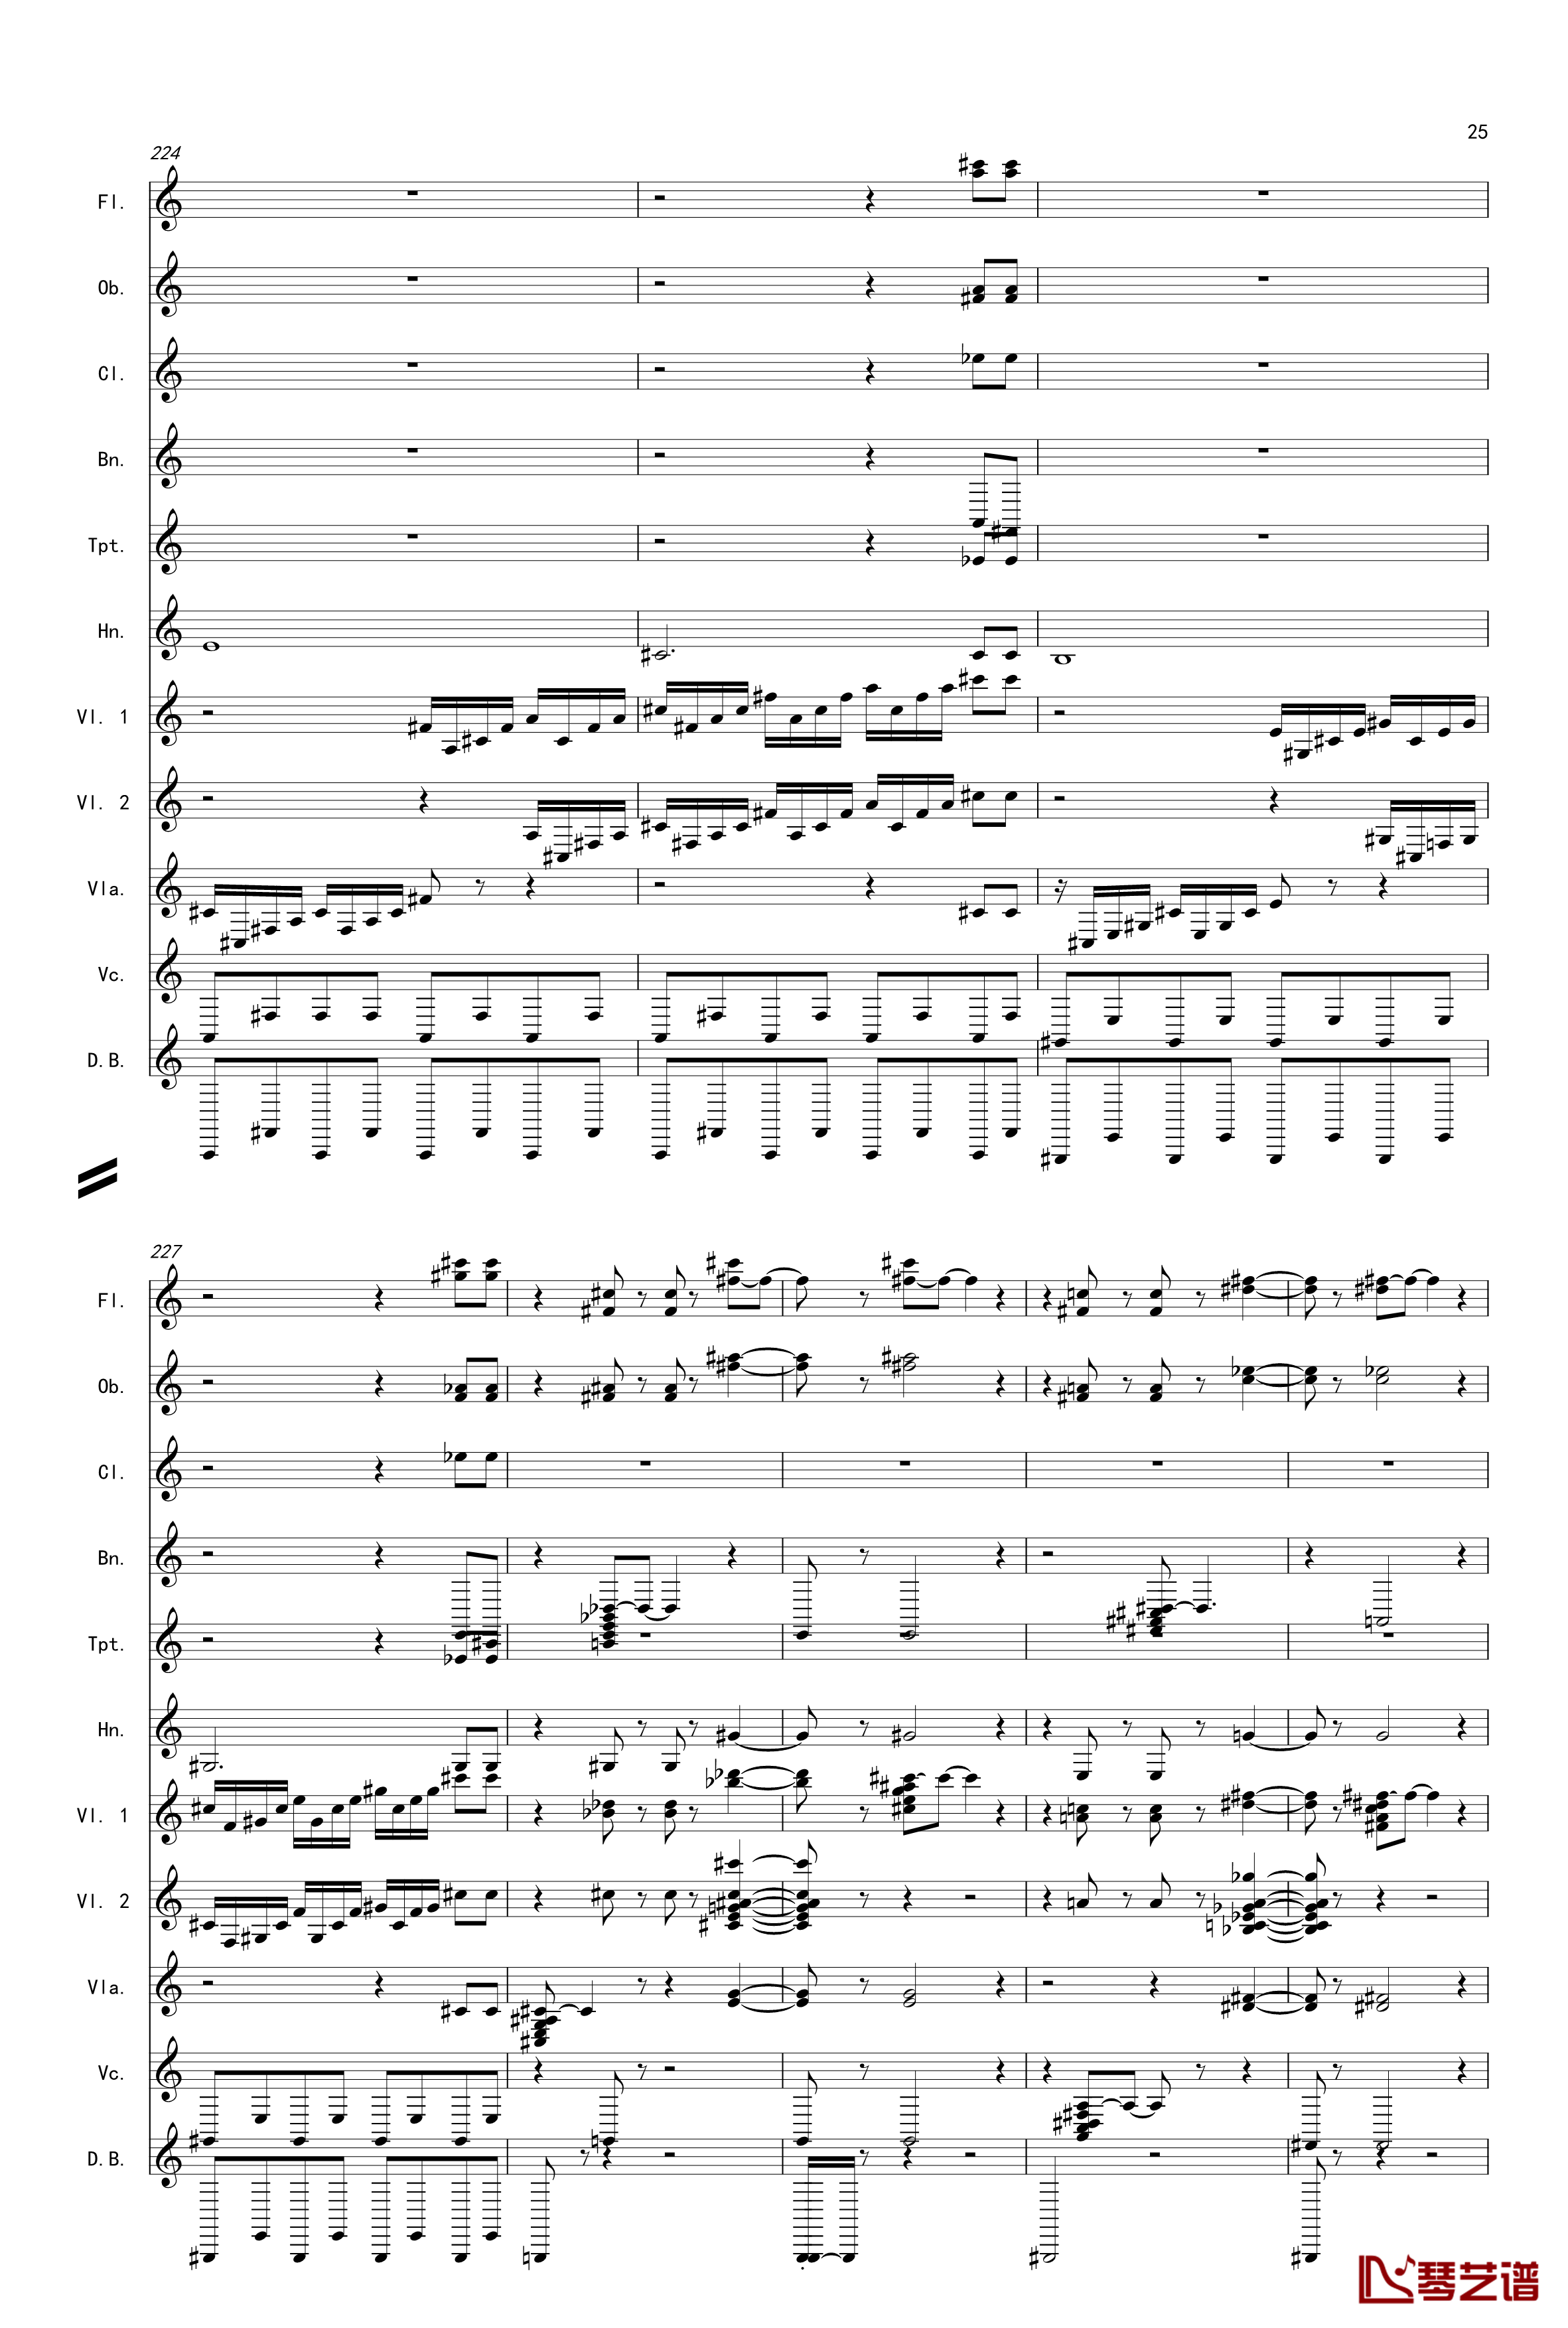 奏鸣曲之交响第14首Ⅲ钢琴谱-贝多芬-beethoven25